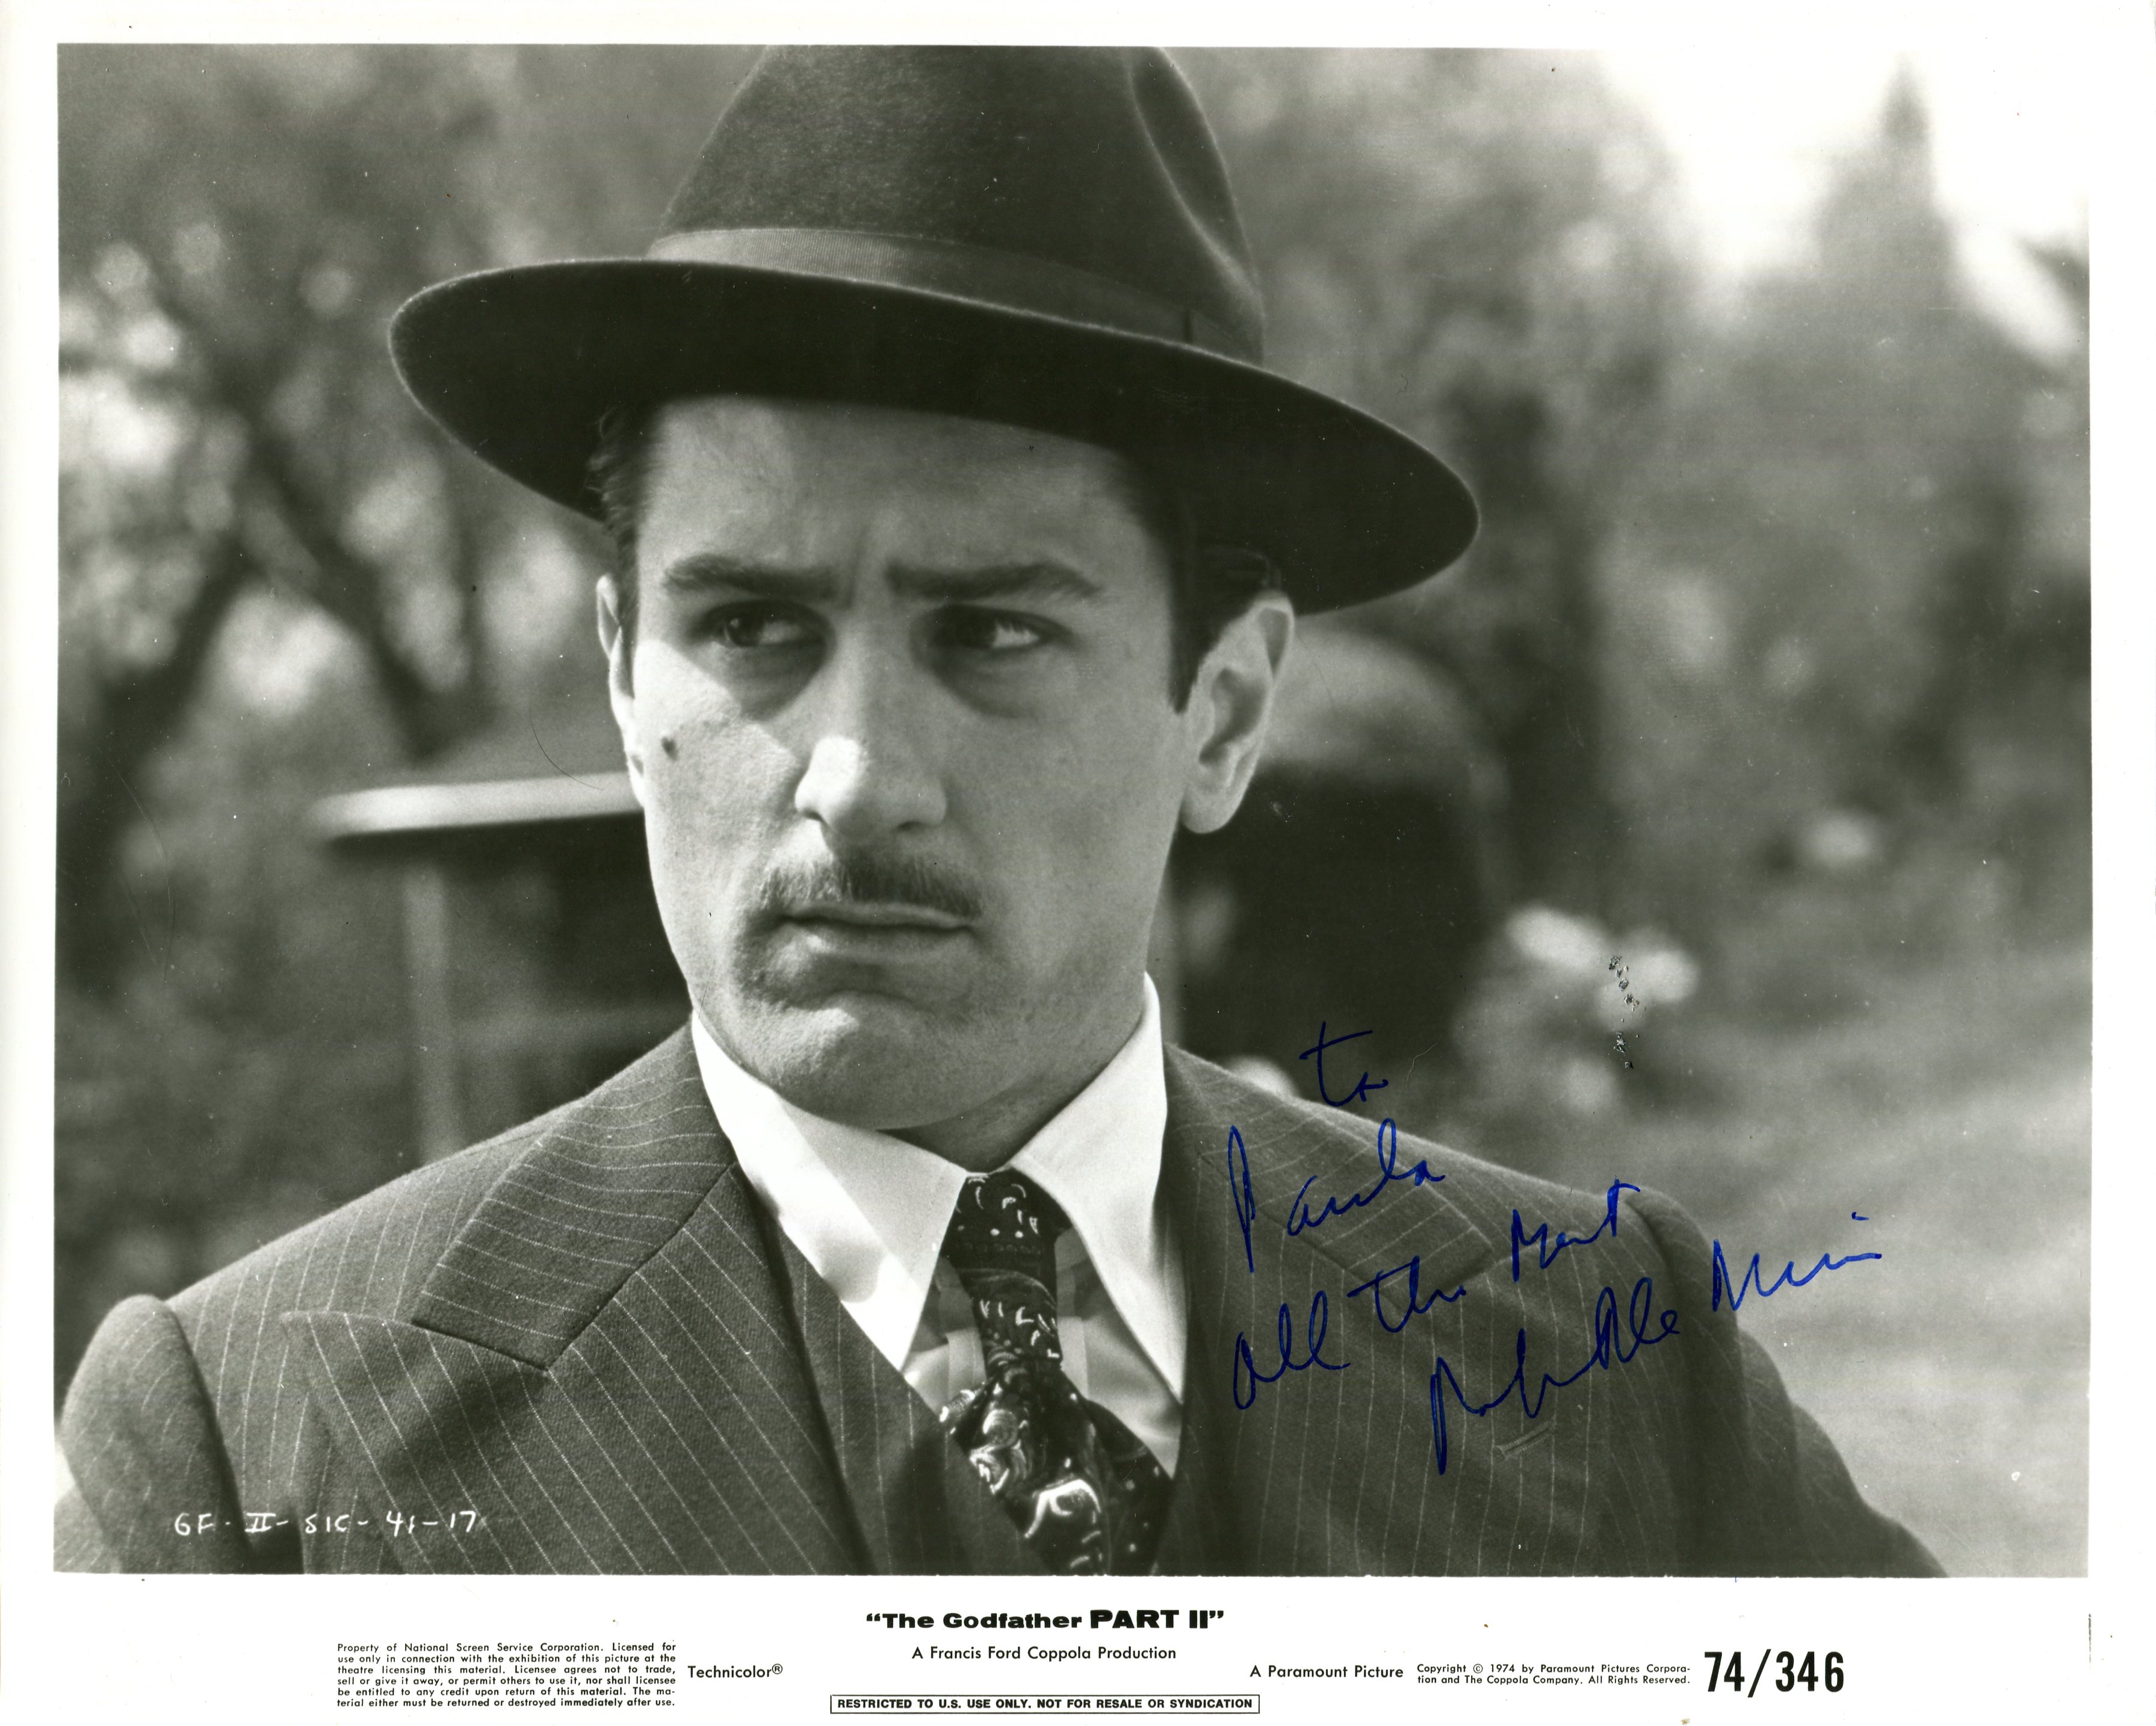 DE NIRO ROBERT: (1943- ) American actor,